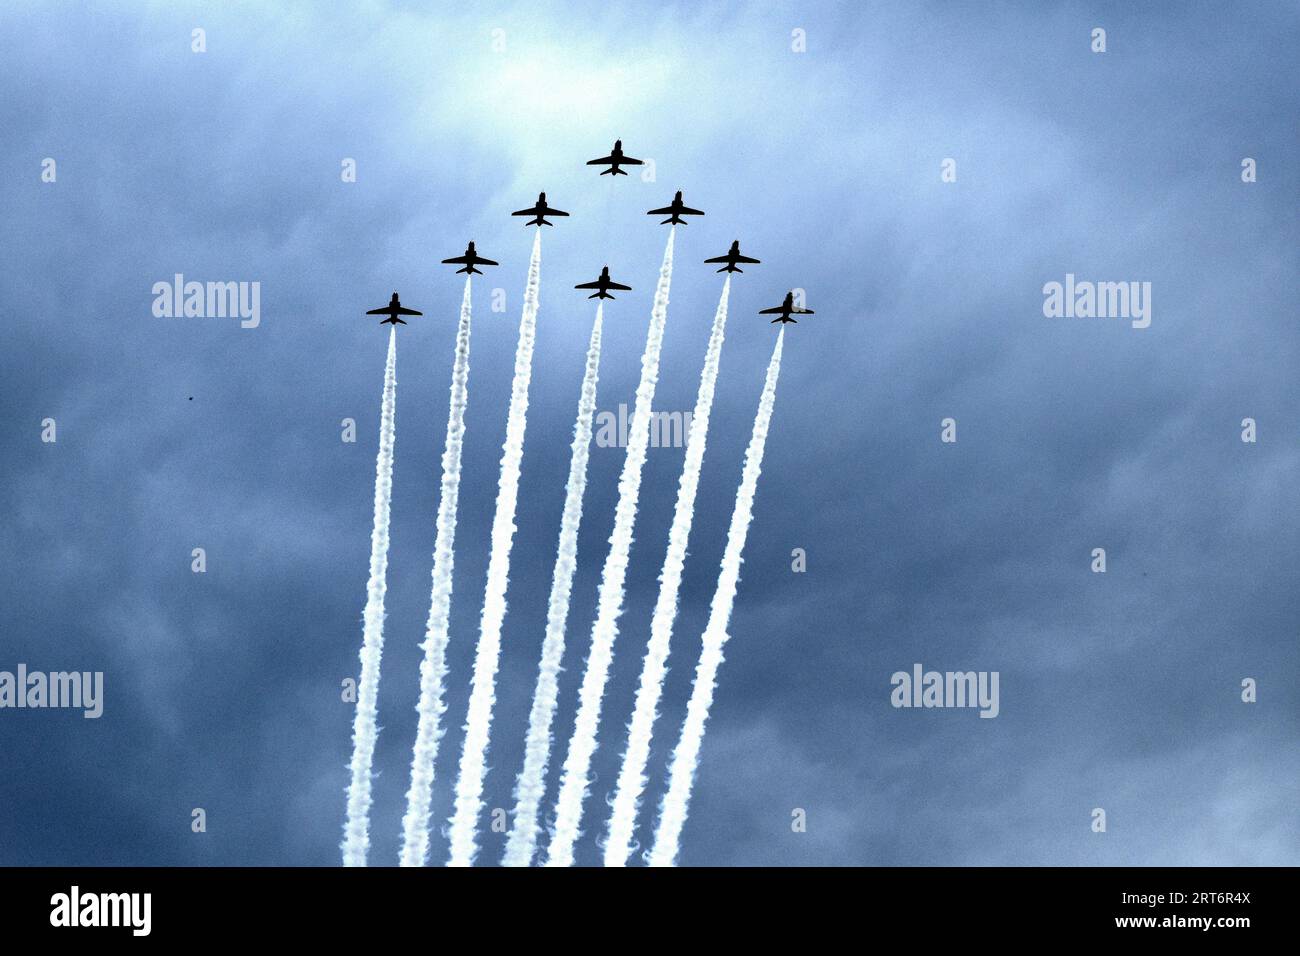 Un'immagine di diversi aerei in formazione che volano attraverso il cielo, con sentieri di fumo bianchi e ondeggianti che seguono ciascuno di essi Foto Stock